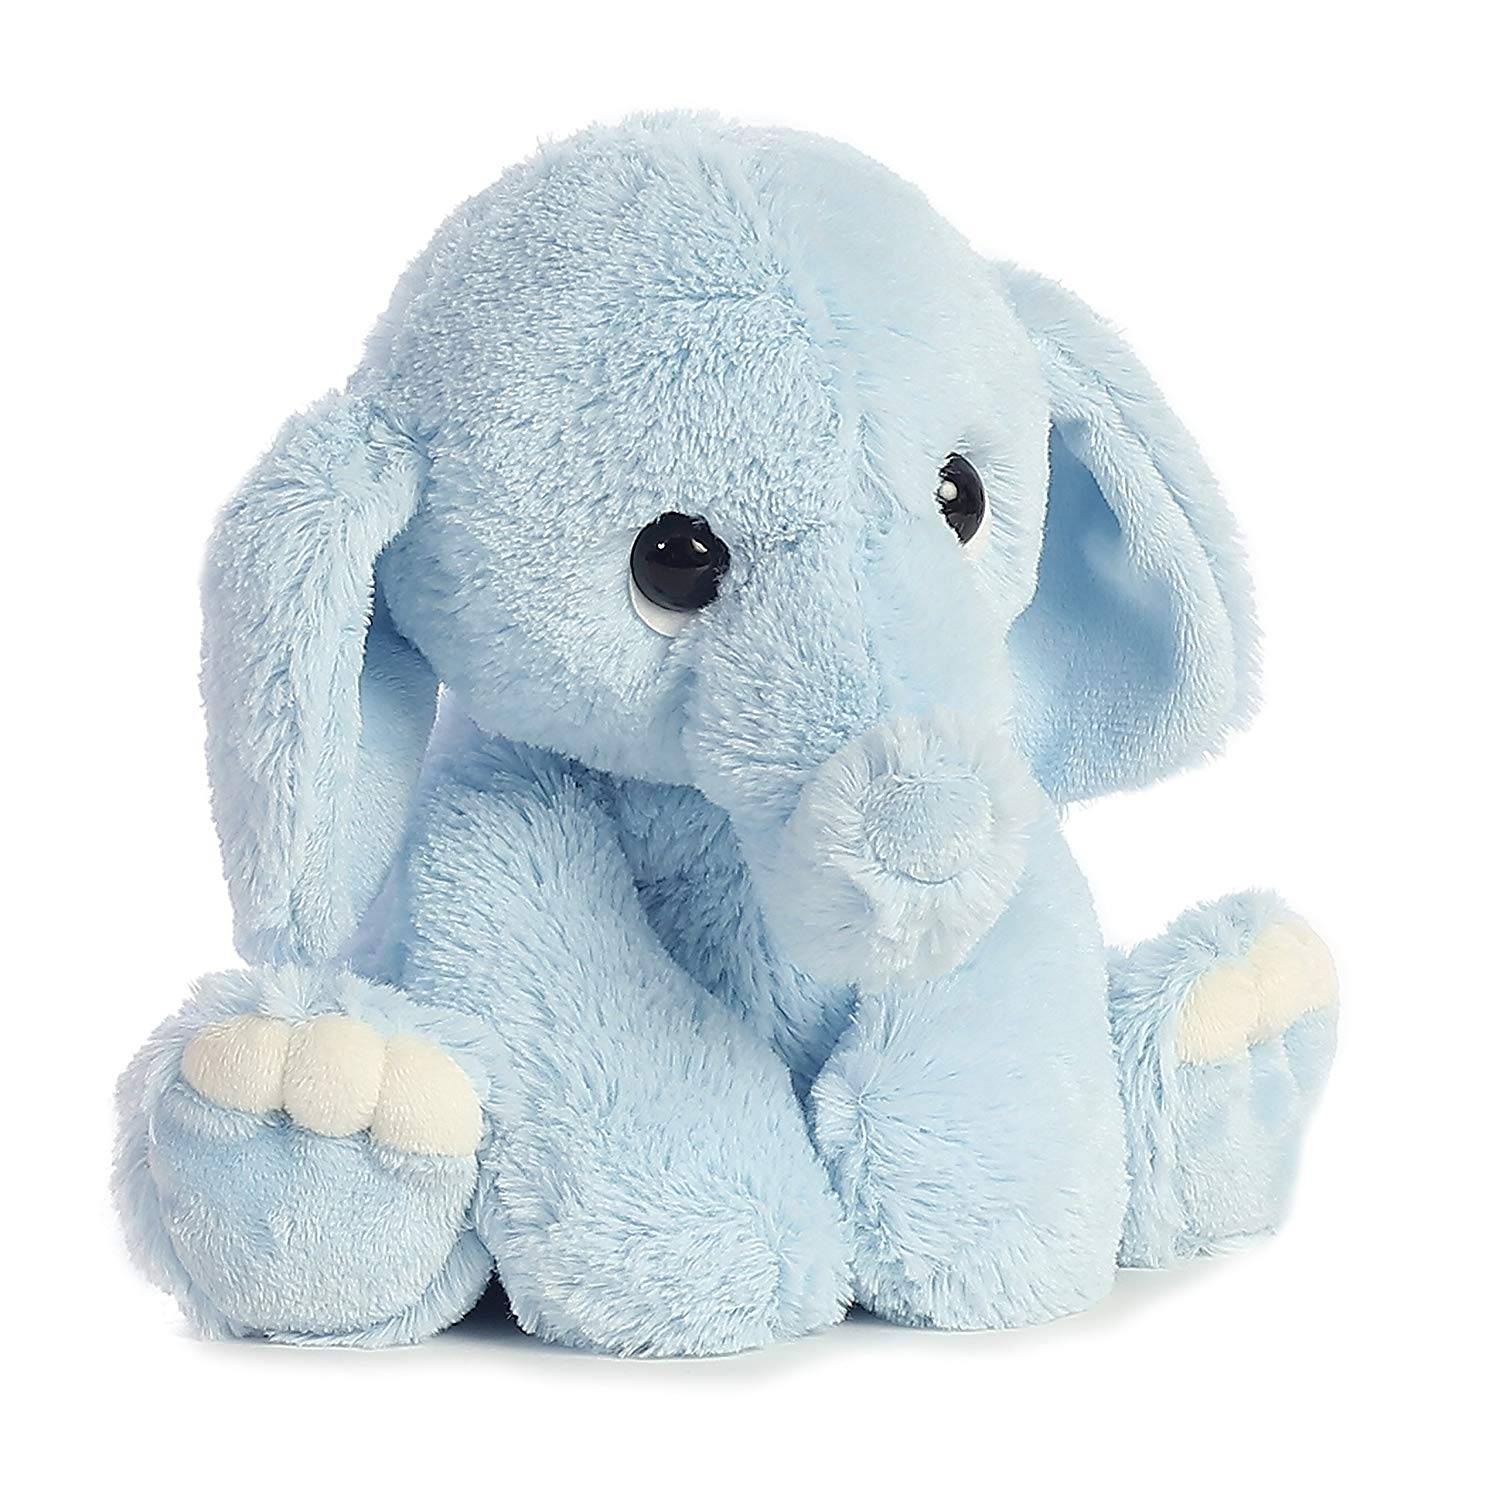 lovely pink velboa long pile large plush stuffed soft elephant toy for kids